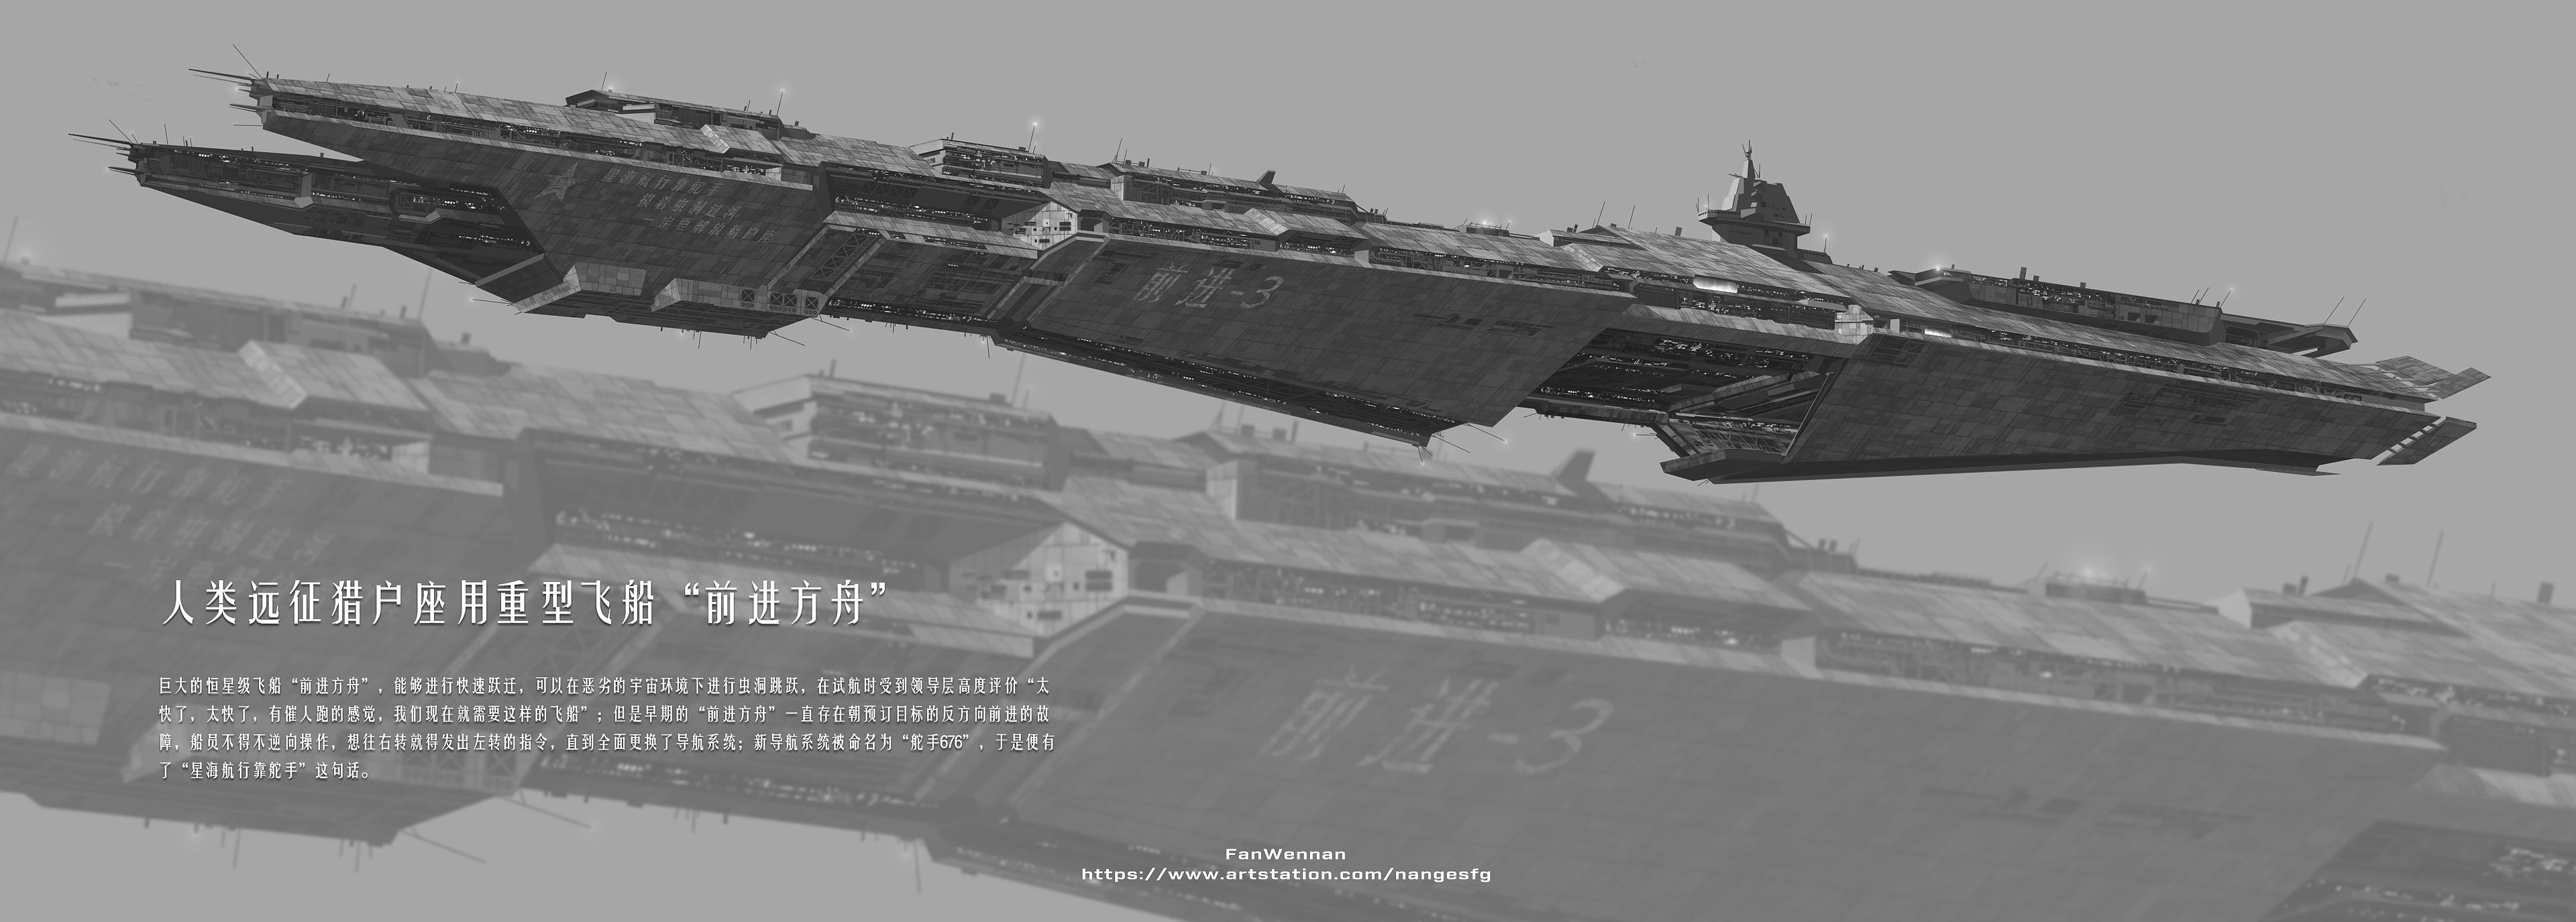 General 3840x1375 China 2098 spaceship Chinese Fan Wennan